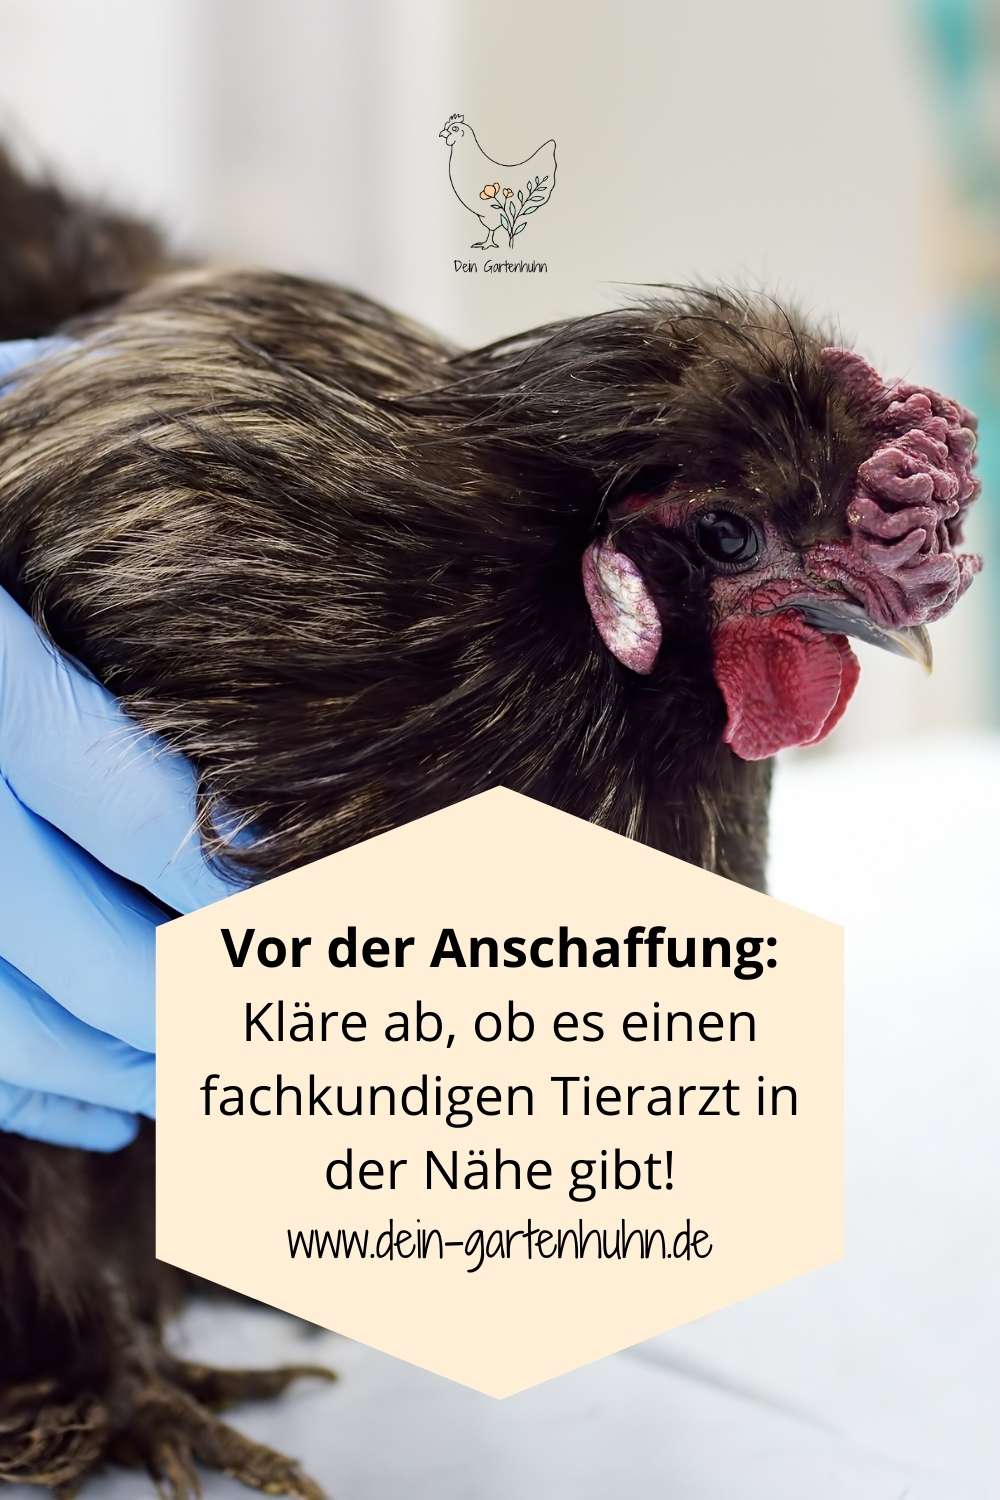 Gibt es einen Tierarzt für Hühner in Deiner Nähe?